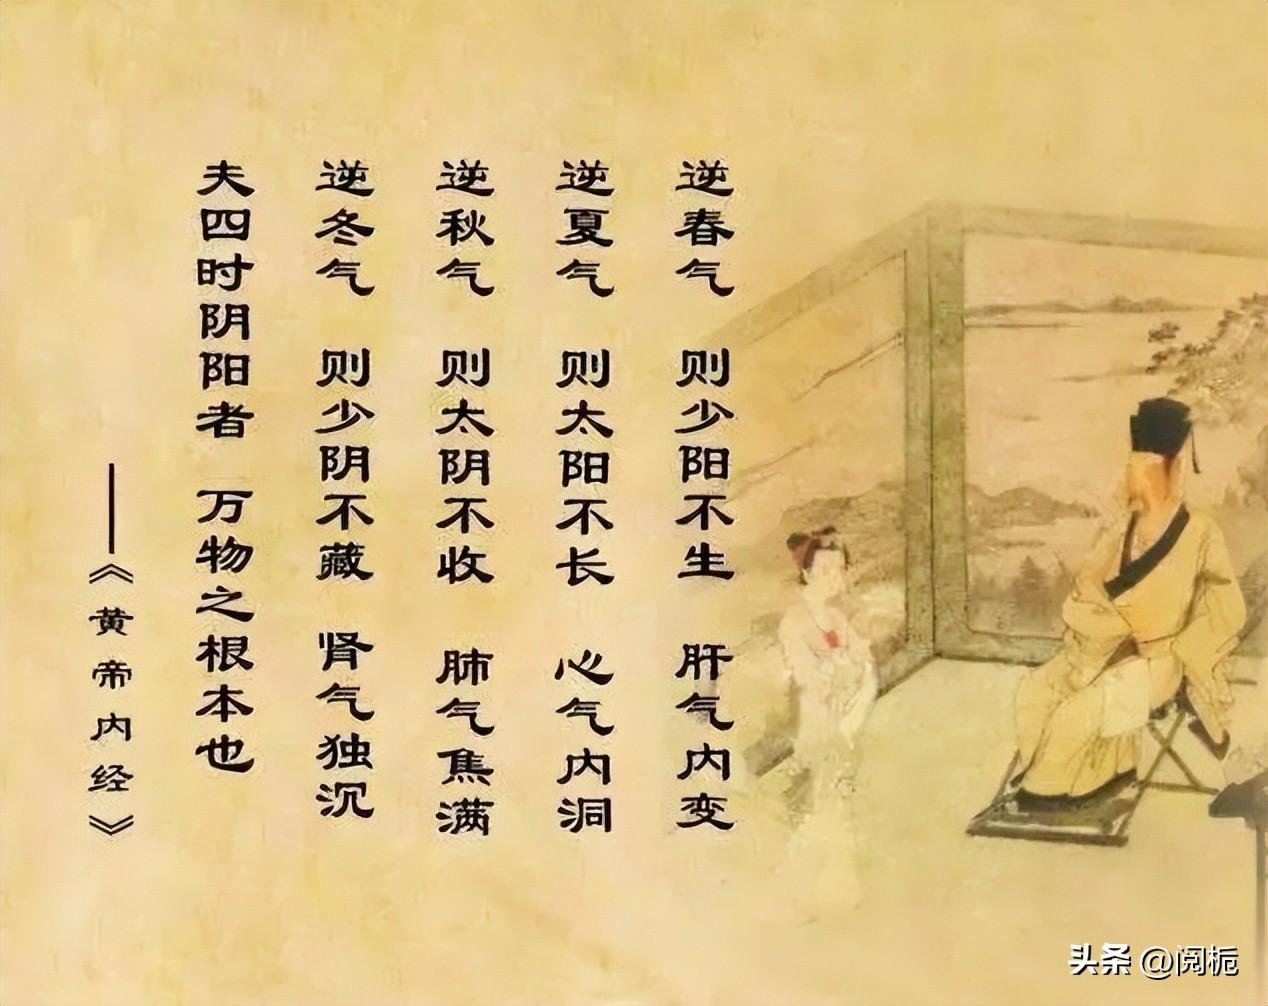 中国古代哲学一词指的发展起来的十所学校